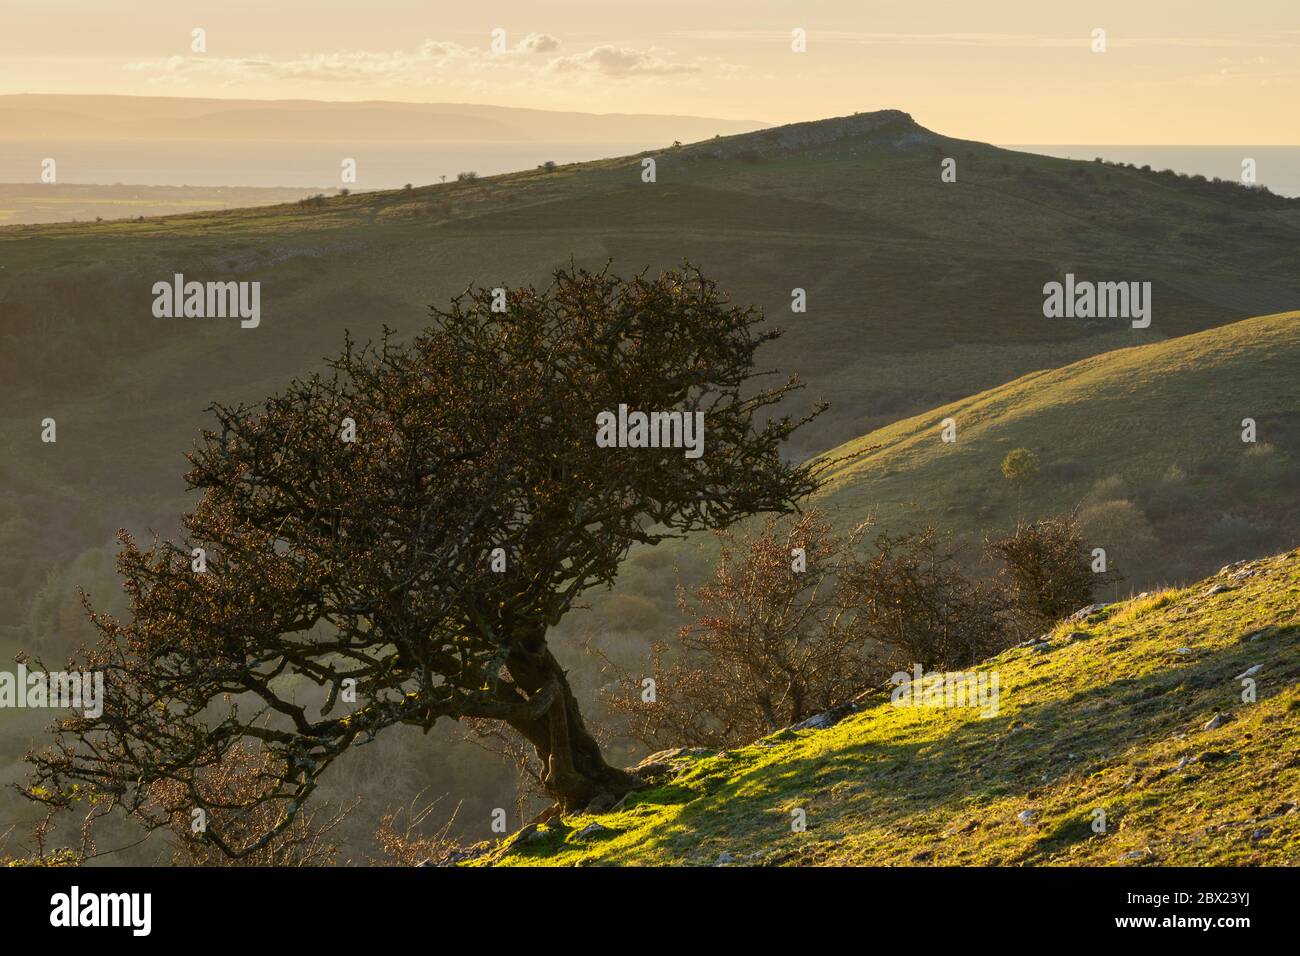 Ein verkümmter Weißdornbaum auf dem Schwankenden Down, Somerset, mit Blick auf den Crook Peak dahinter. Stockfoto